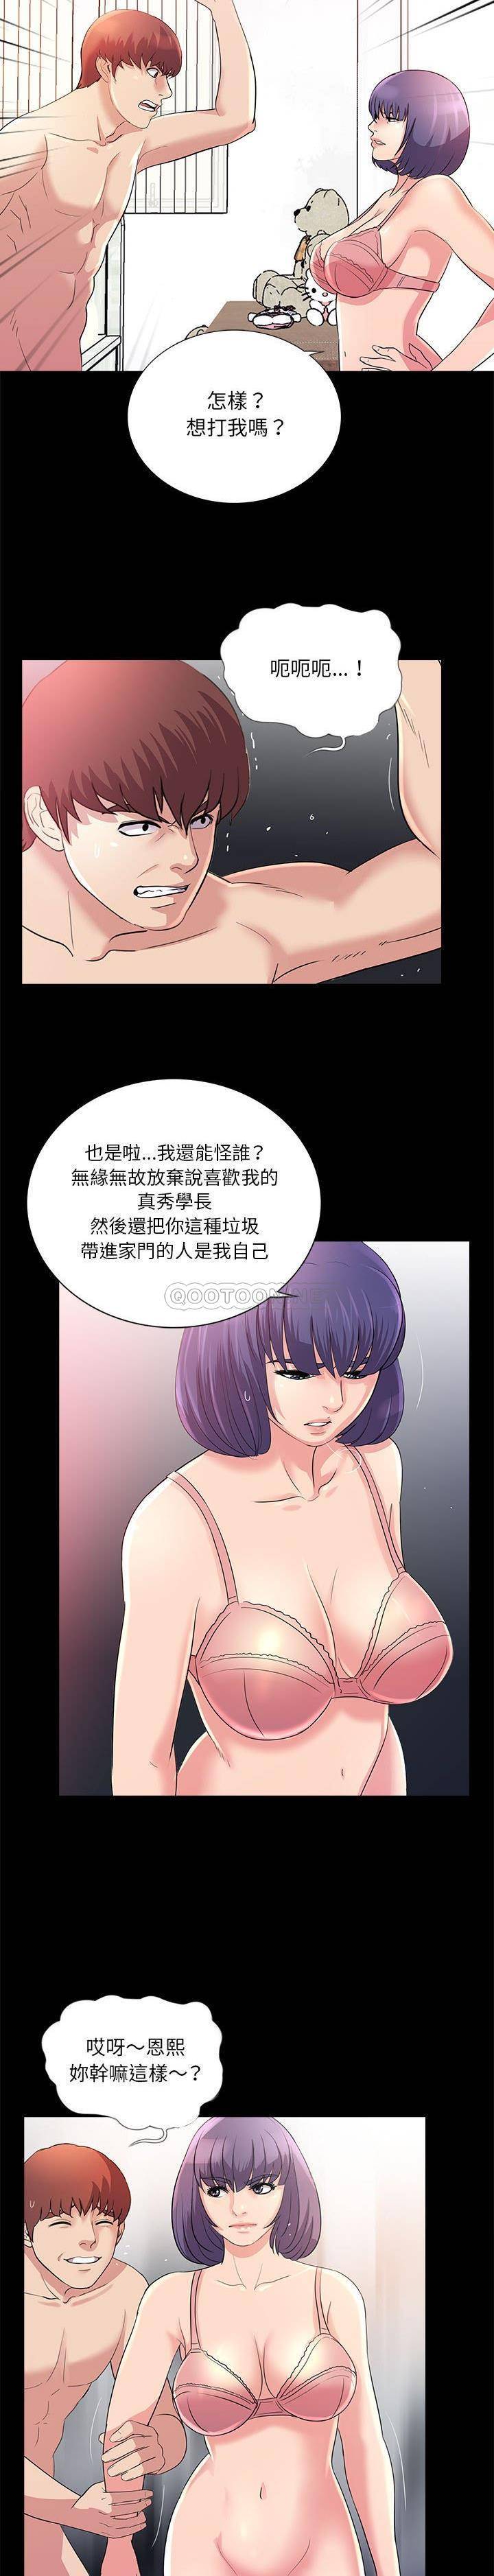 韩国污漫画 神秘復學生 第22话 20